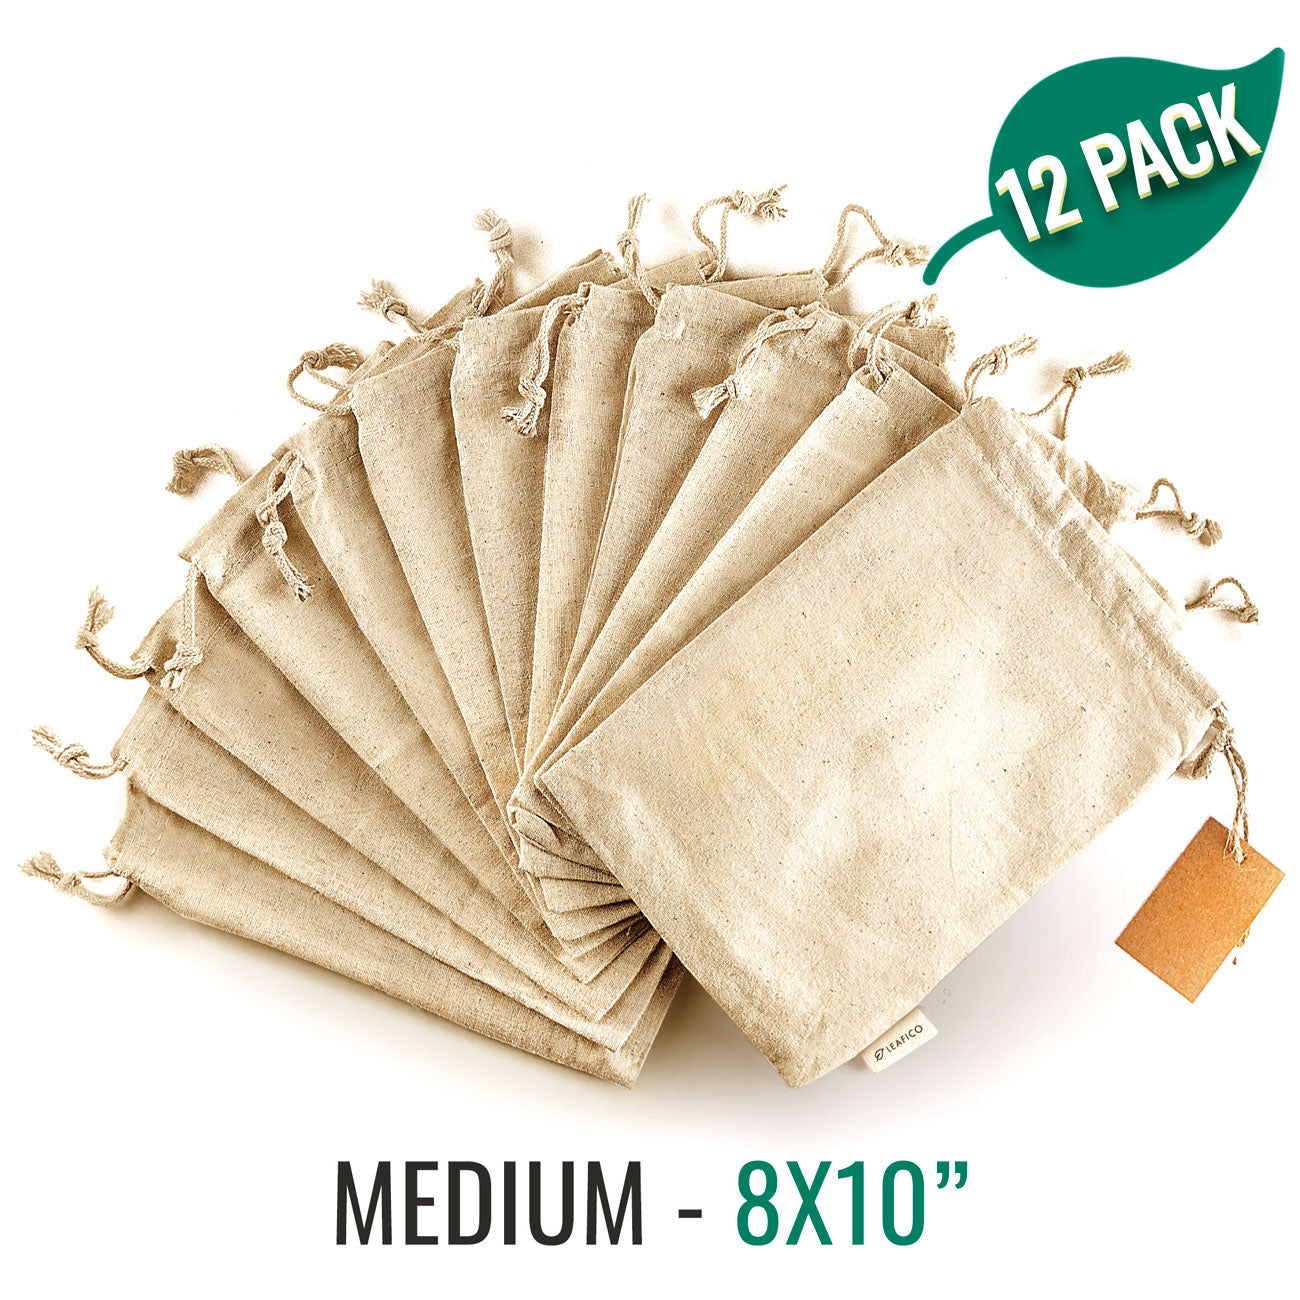 Multipurpose Reusable Cotton Bags Medium 8x10 – Leafico